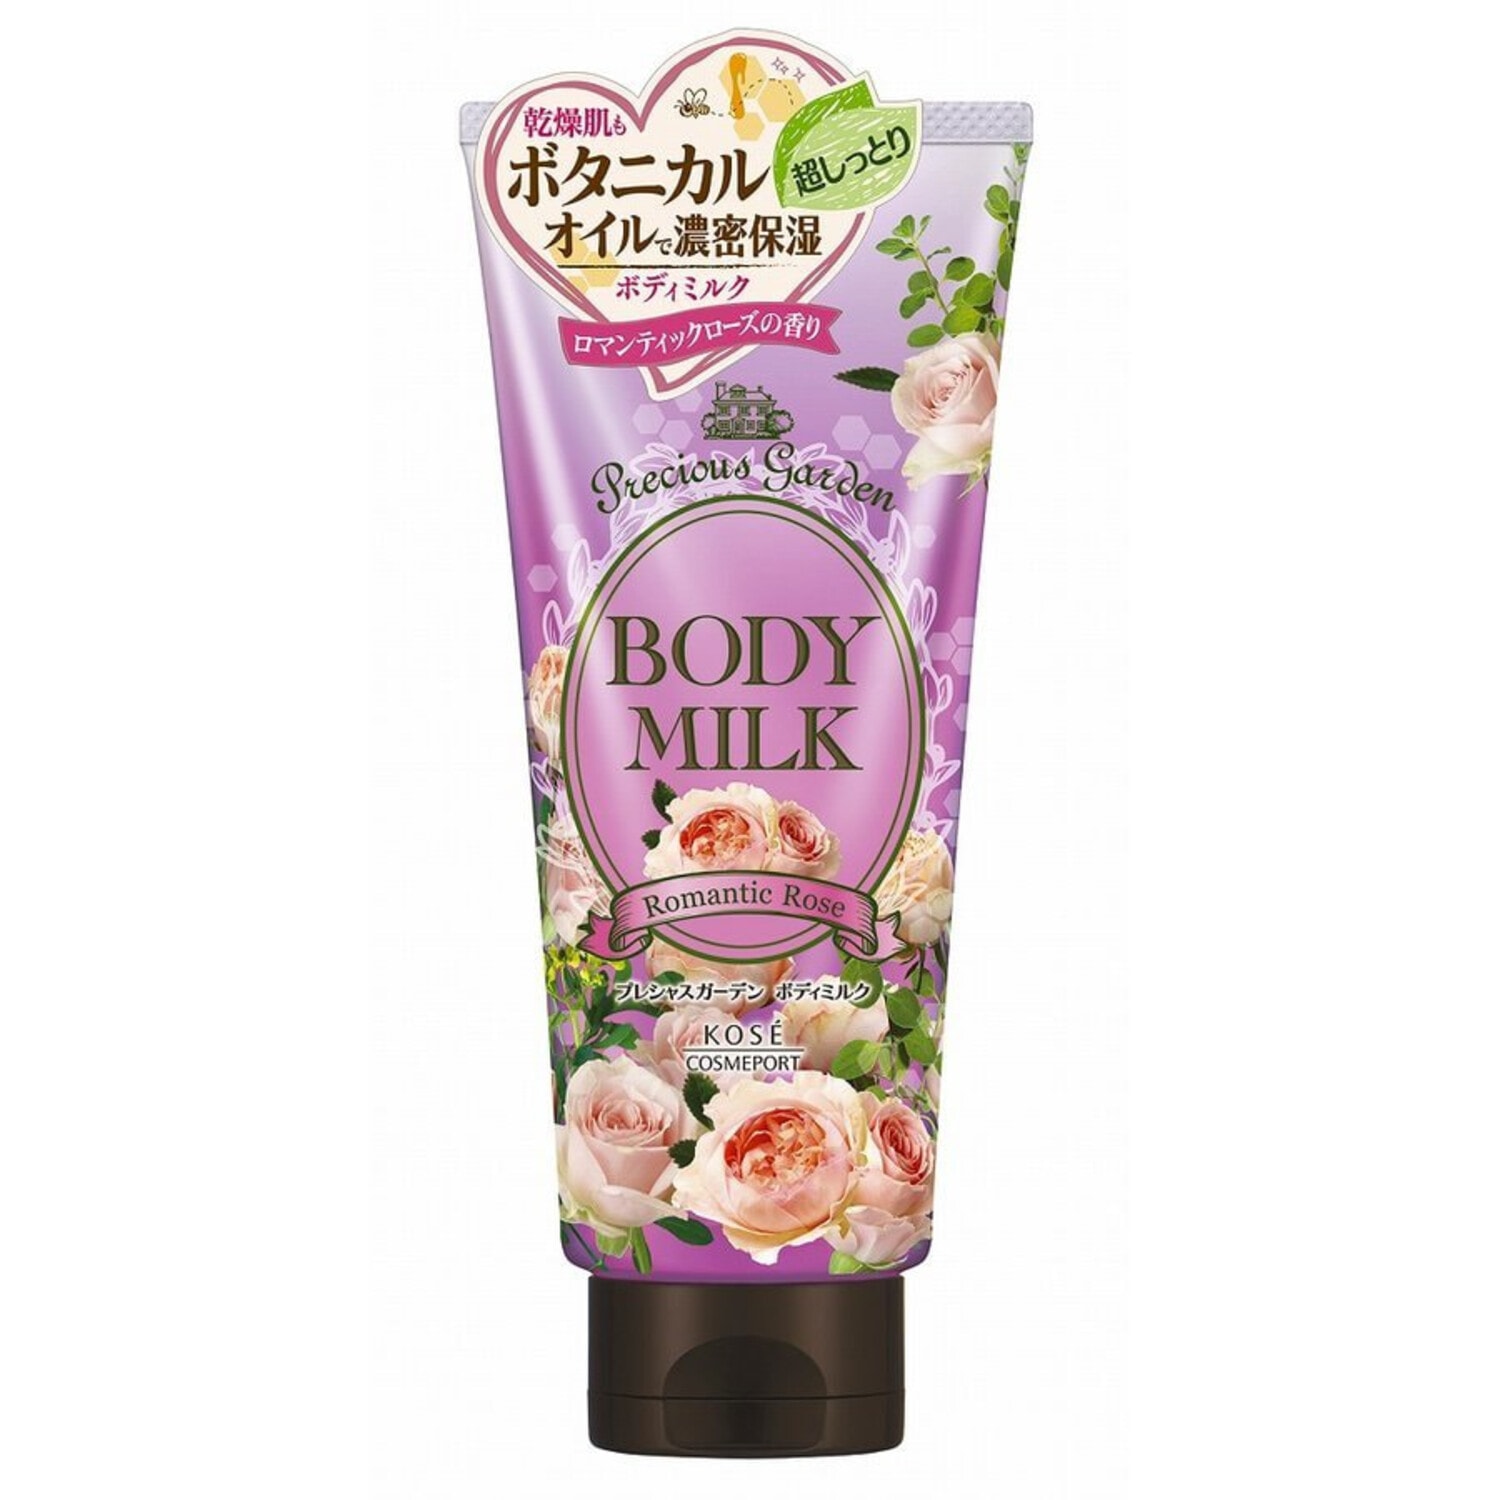 Precious Garden Body Milk Romantic Rose Молочко для тела питательное и увлажняющее, на основе растительных масел, с нежным ароматом розы, 200 г. / 387827